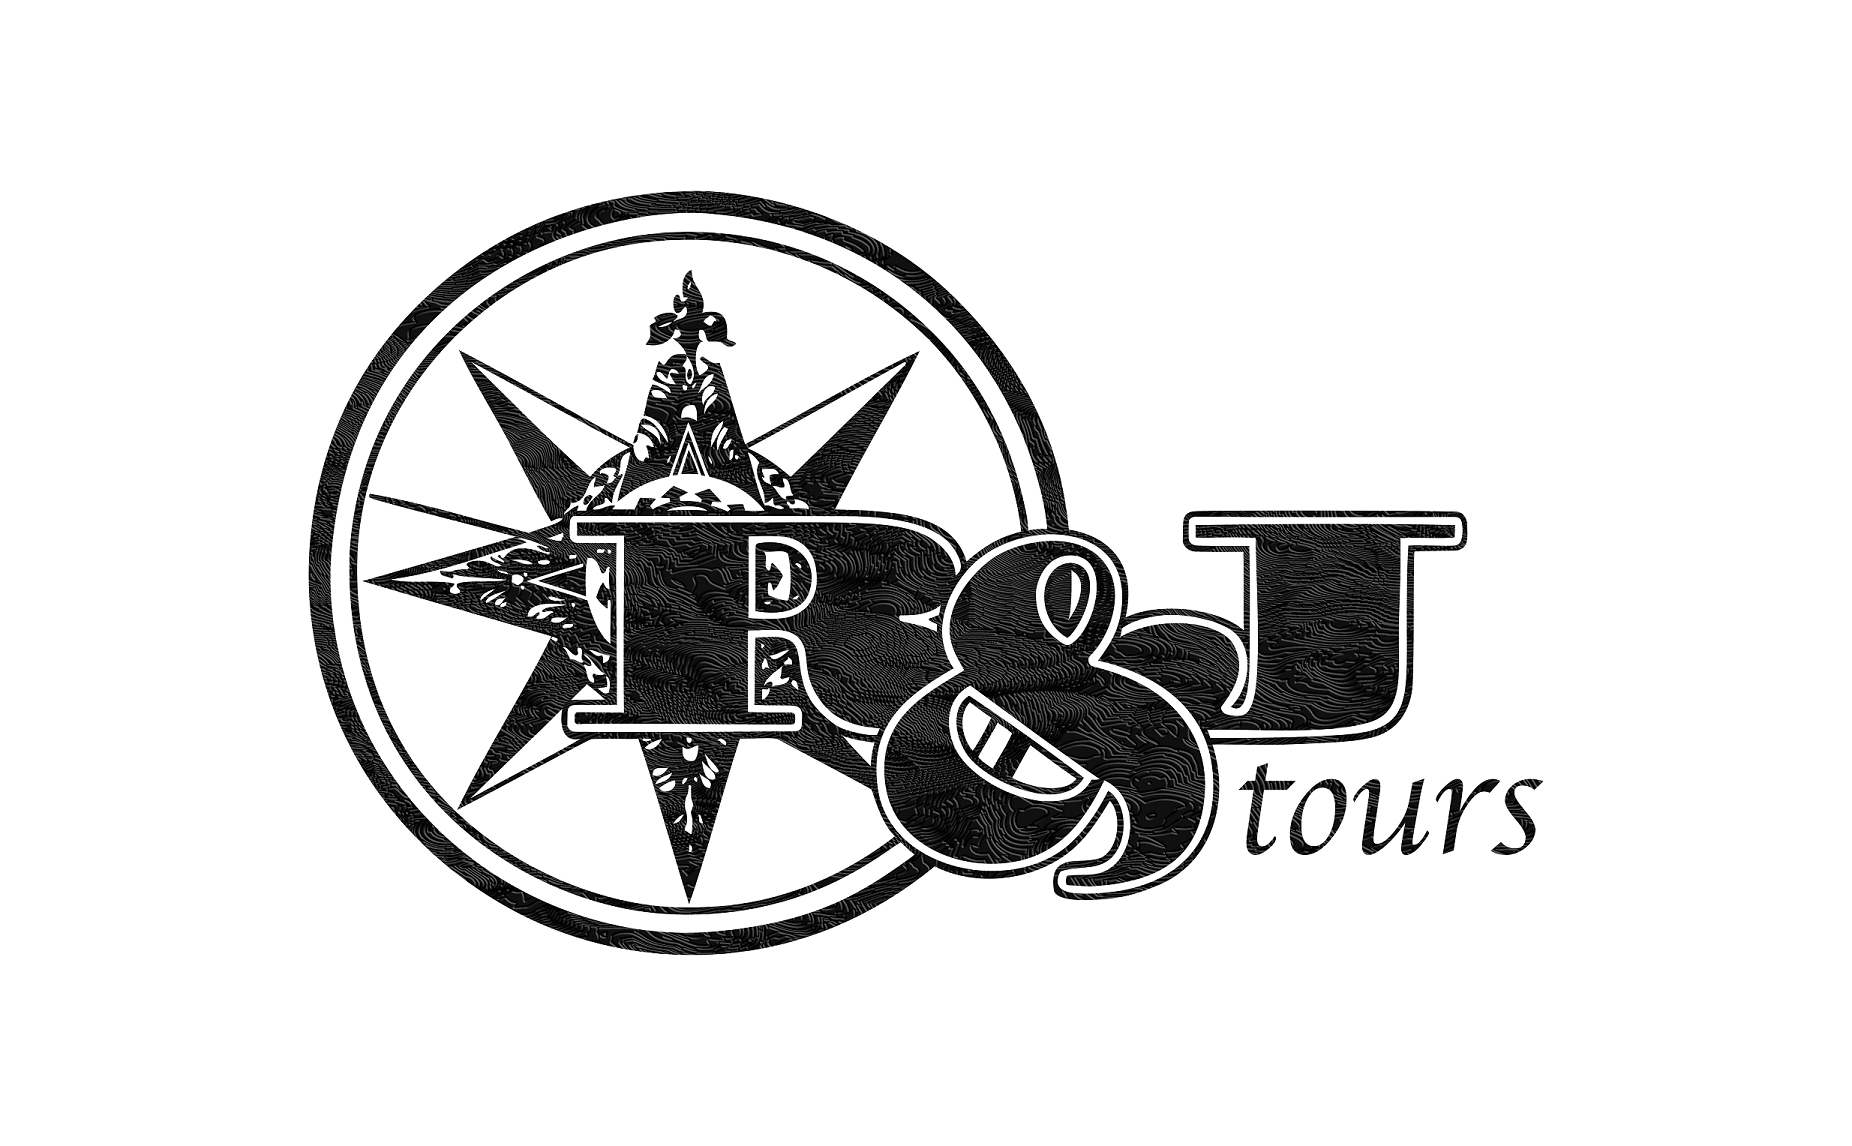 rj tours online